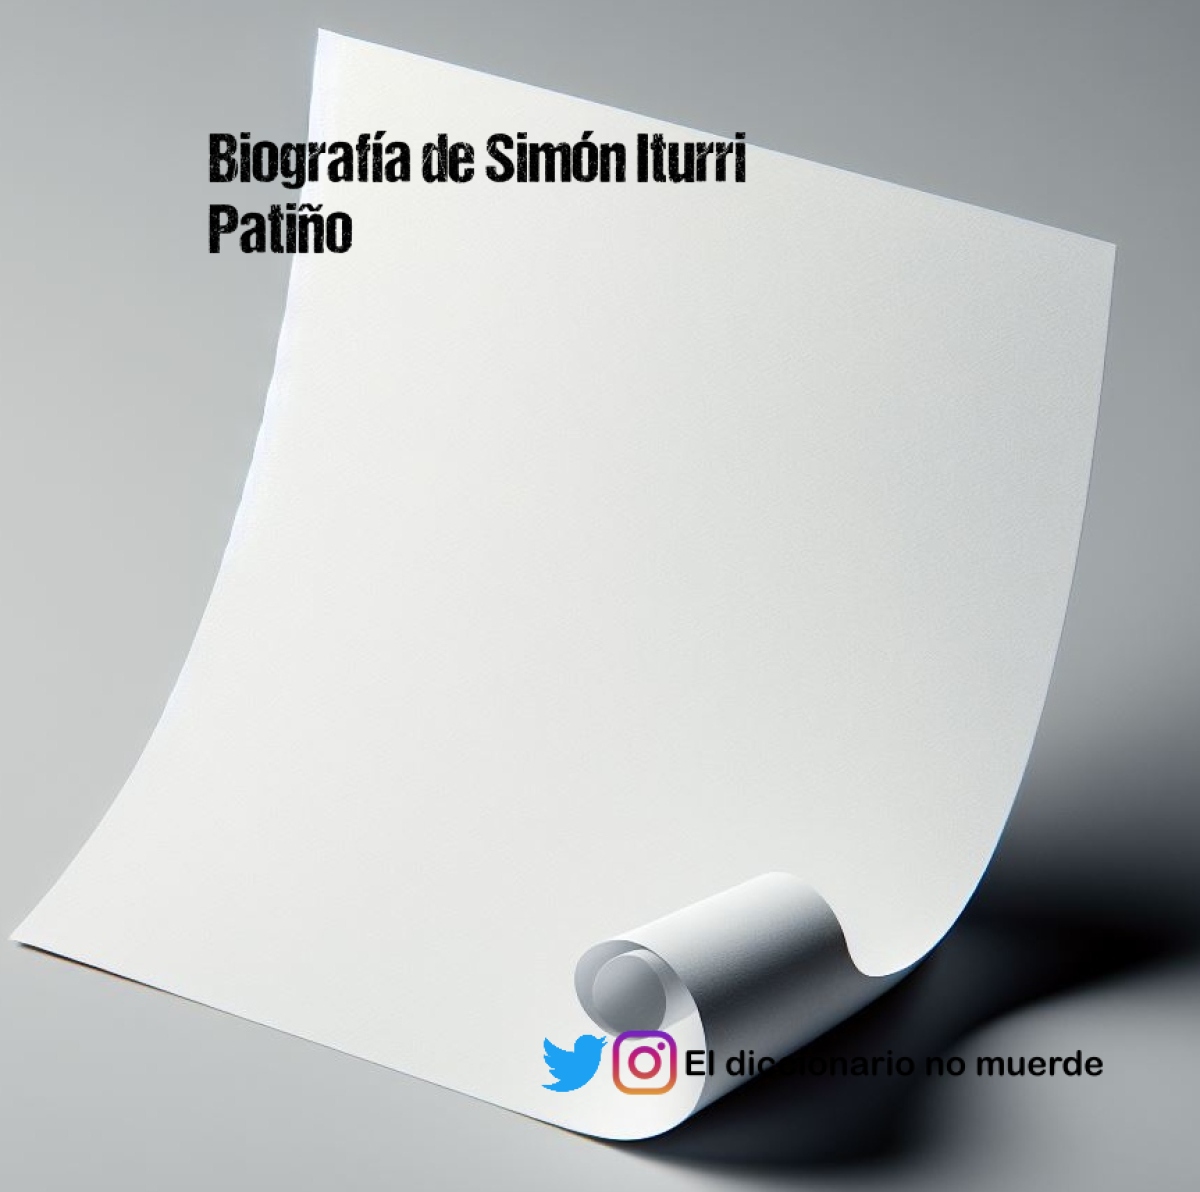 Biografía de Simón Iturri Patiño